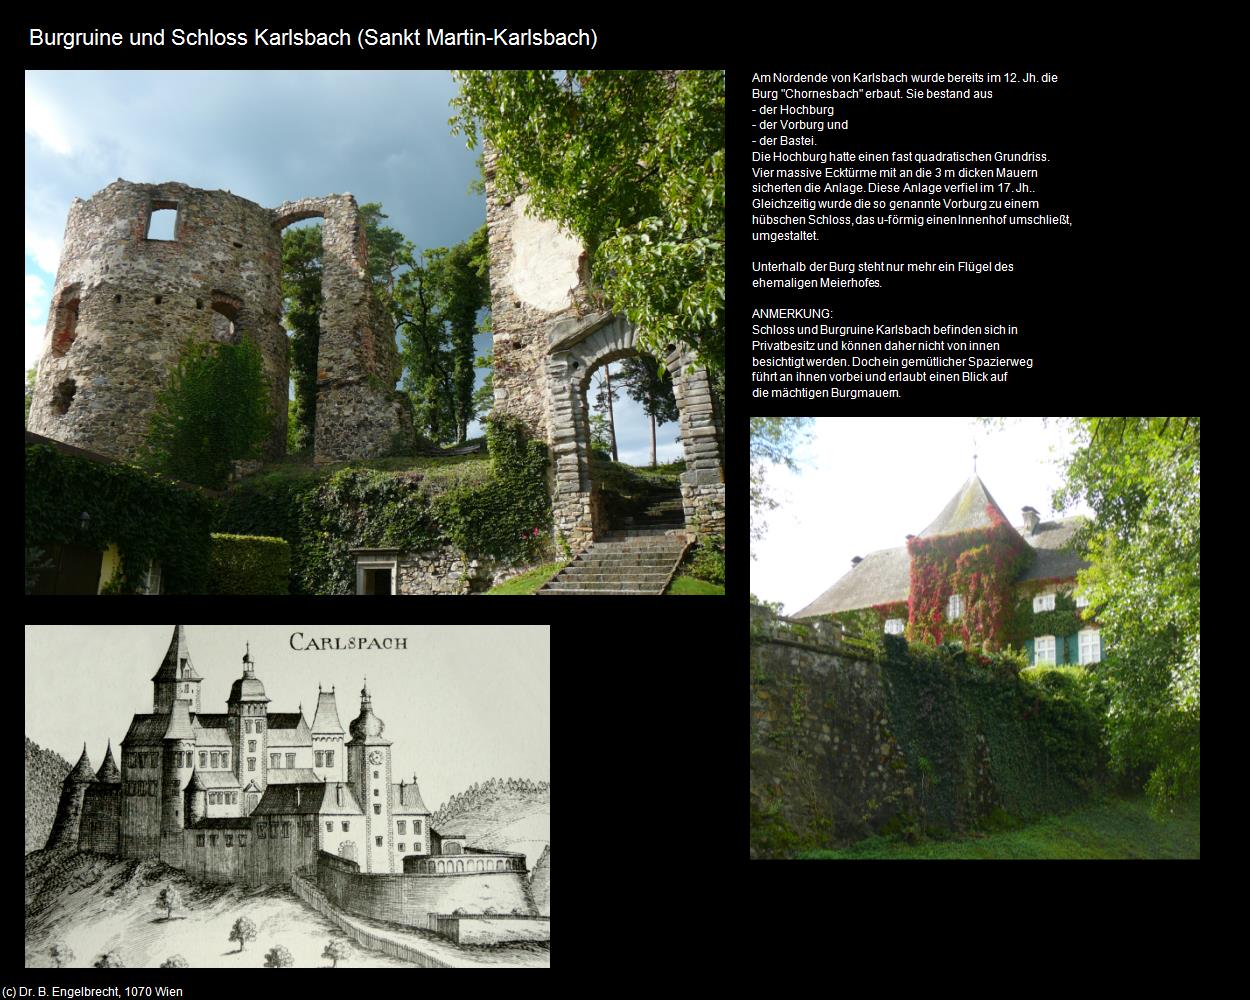 Burgruine und Schloss Karlsbach (Sankt Martin-Karlsbach) in Kulturatlas-NIEDERÖSTERREICH